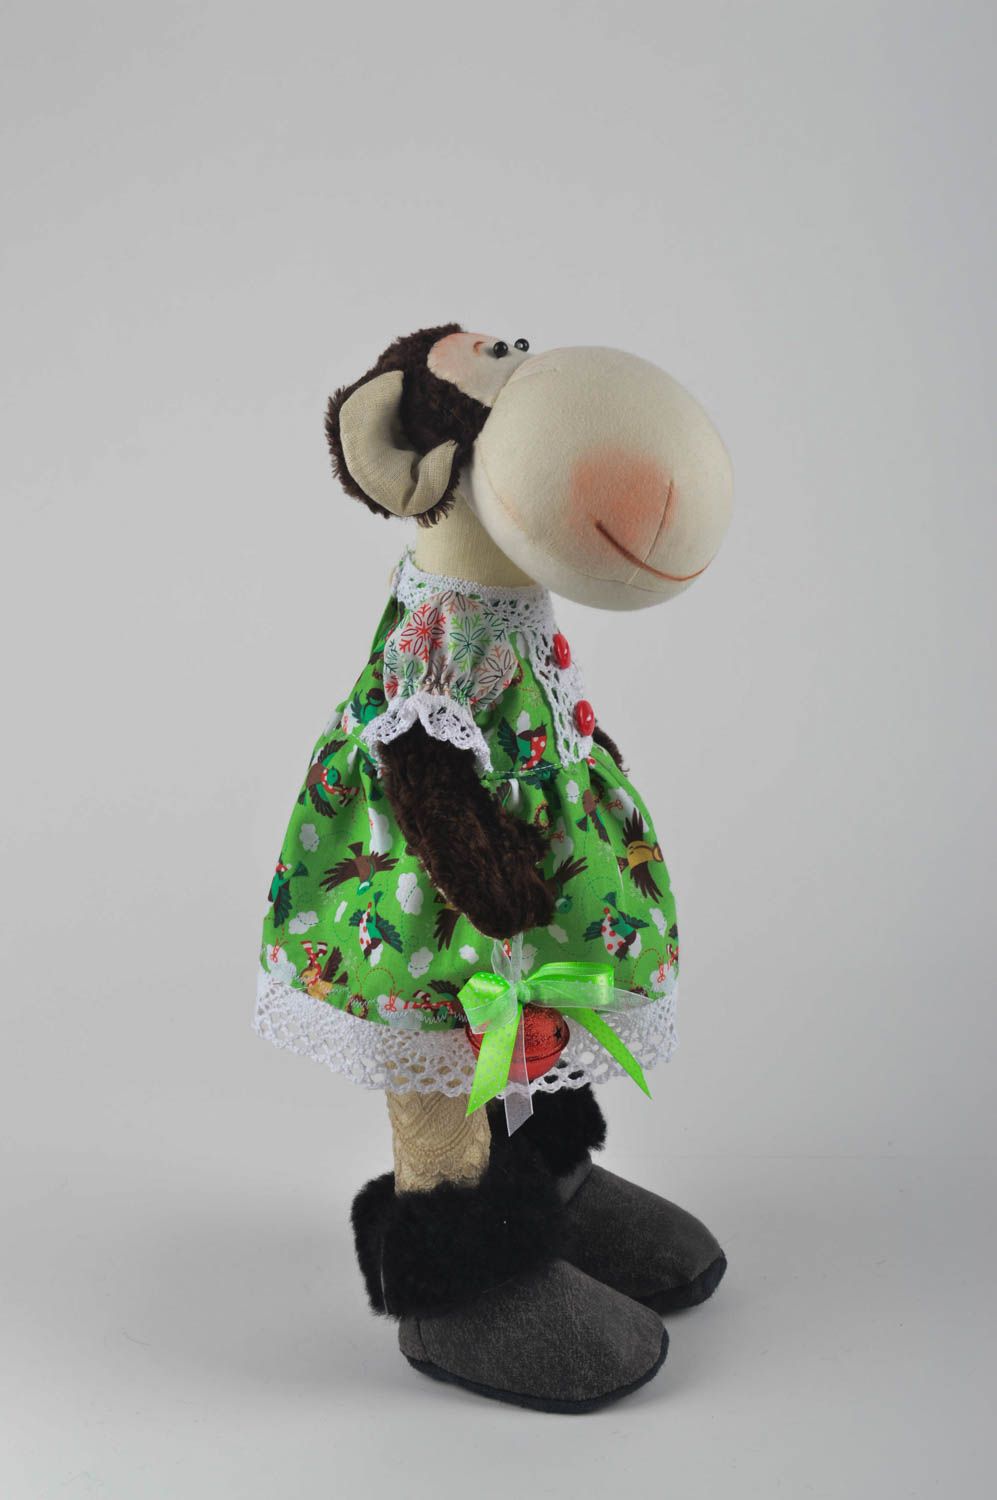 Игрушка обезьяна хэнд мэйд детская игрушка из льна мягкая игрушка текстильная фото 3